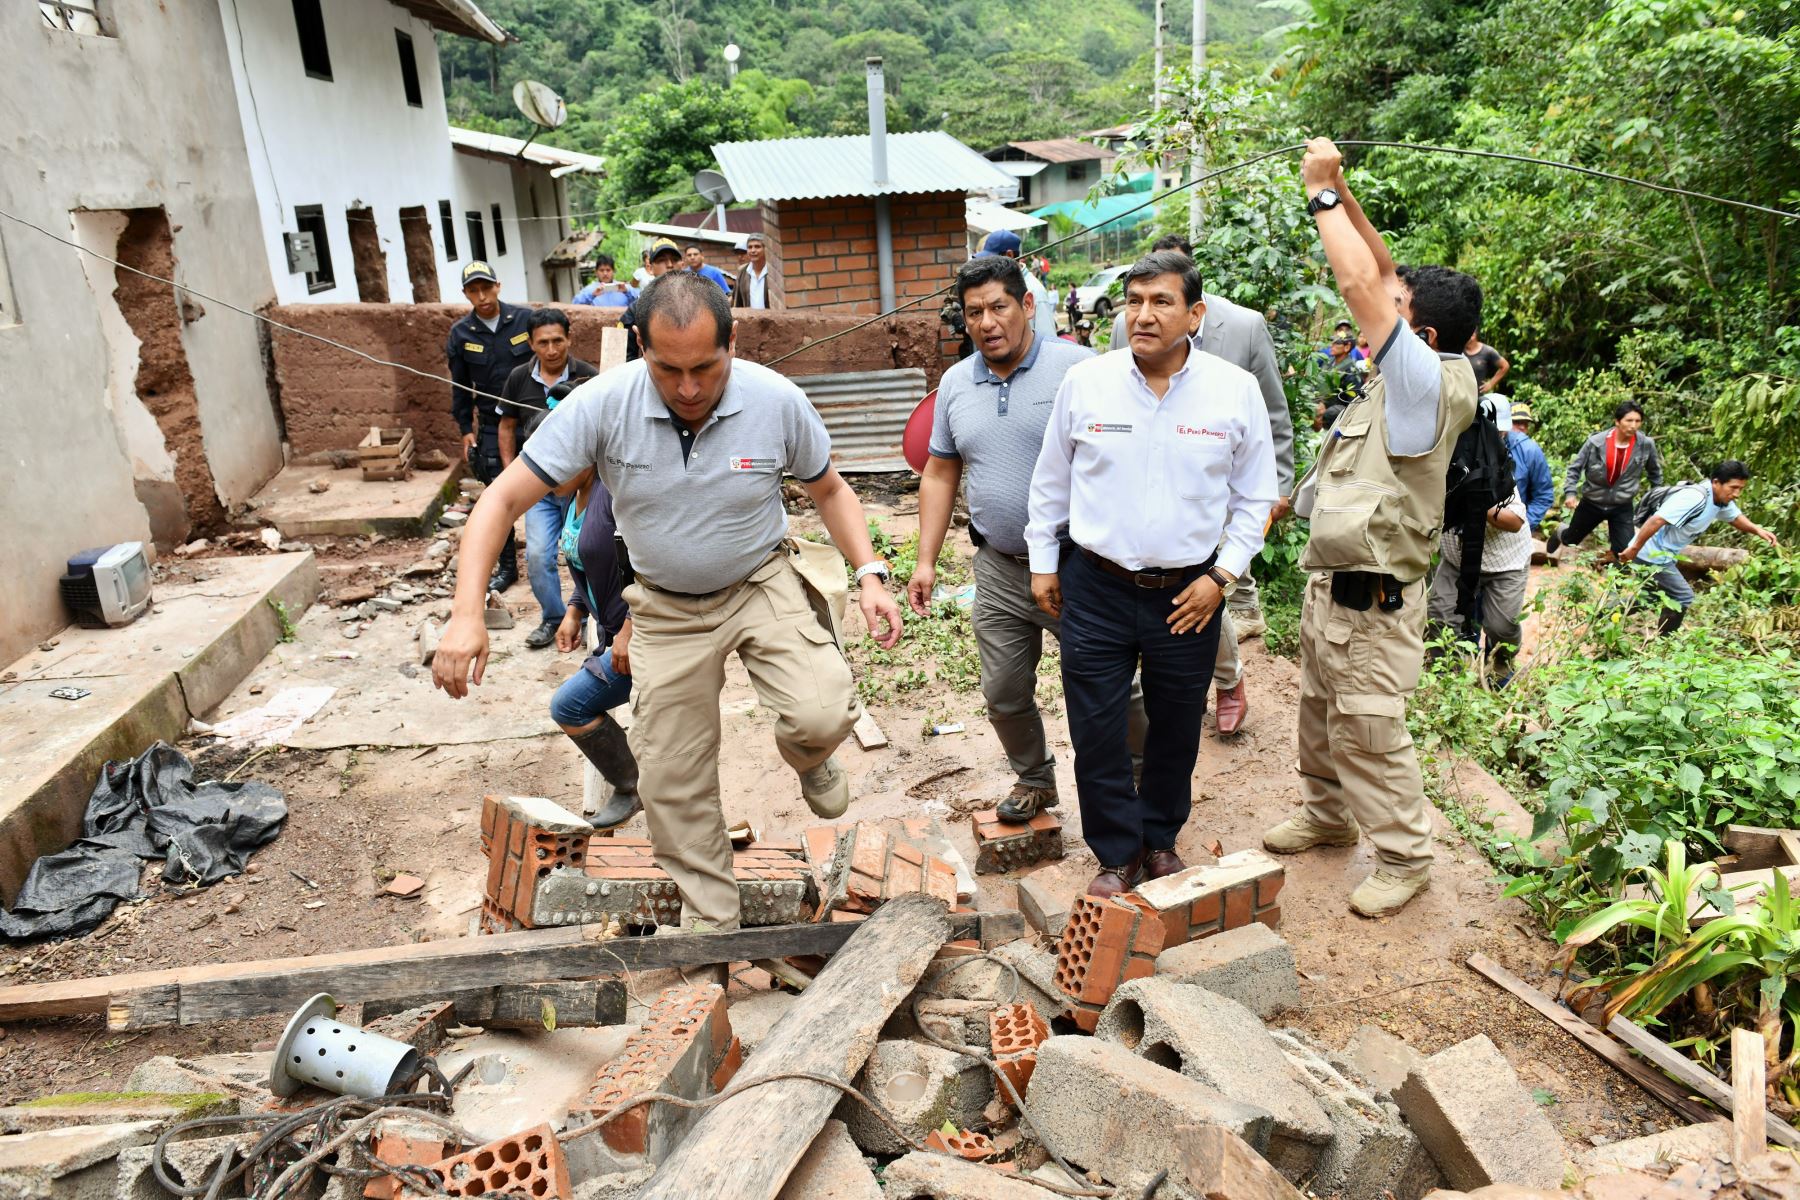 El ministro del Interior, Carlos Morán, constató daños ocasionados por derrumbe parcial un cerro en la provincia de Oxapampa.